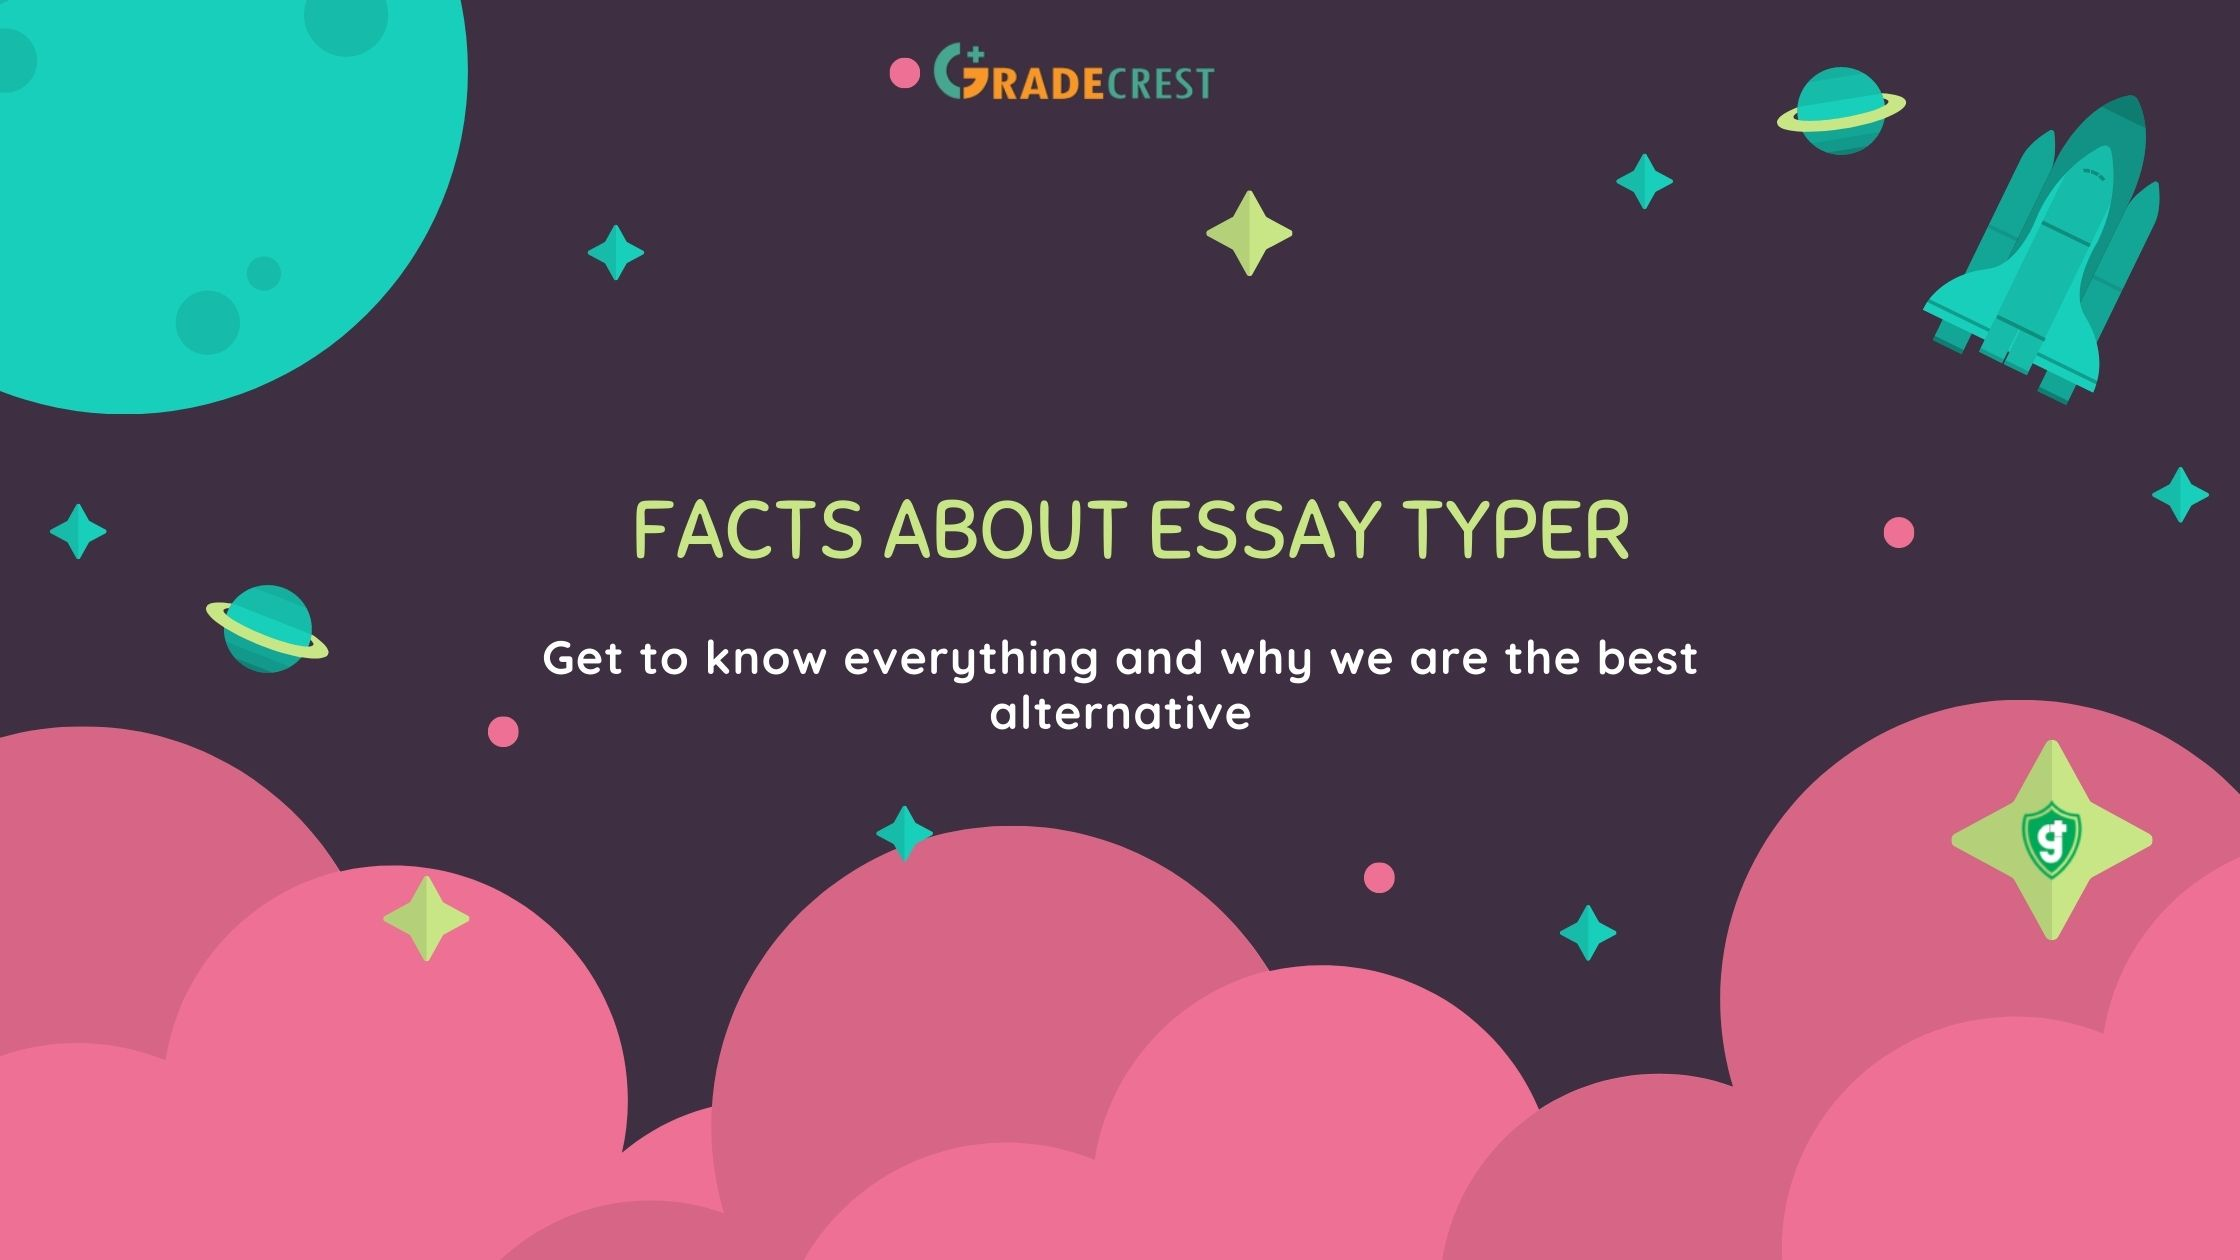 The best essay typer is Gradecrest.com